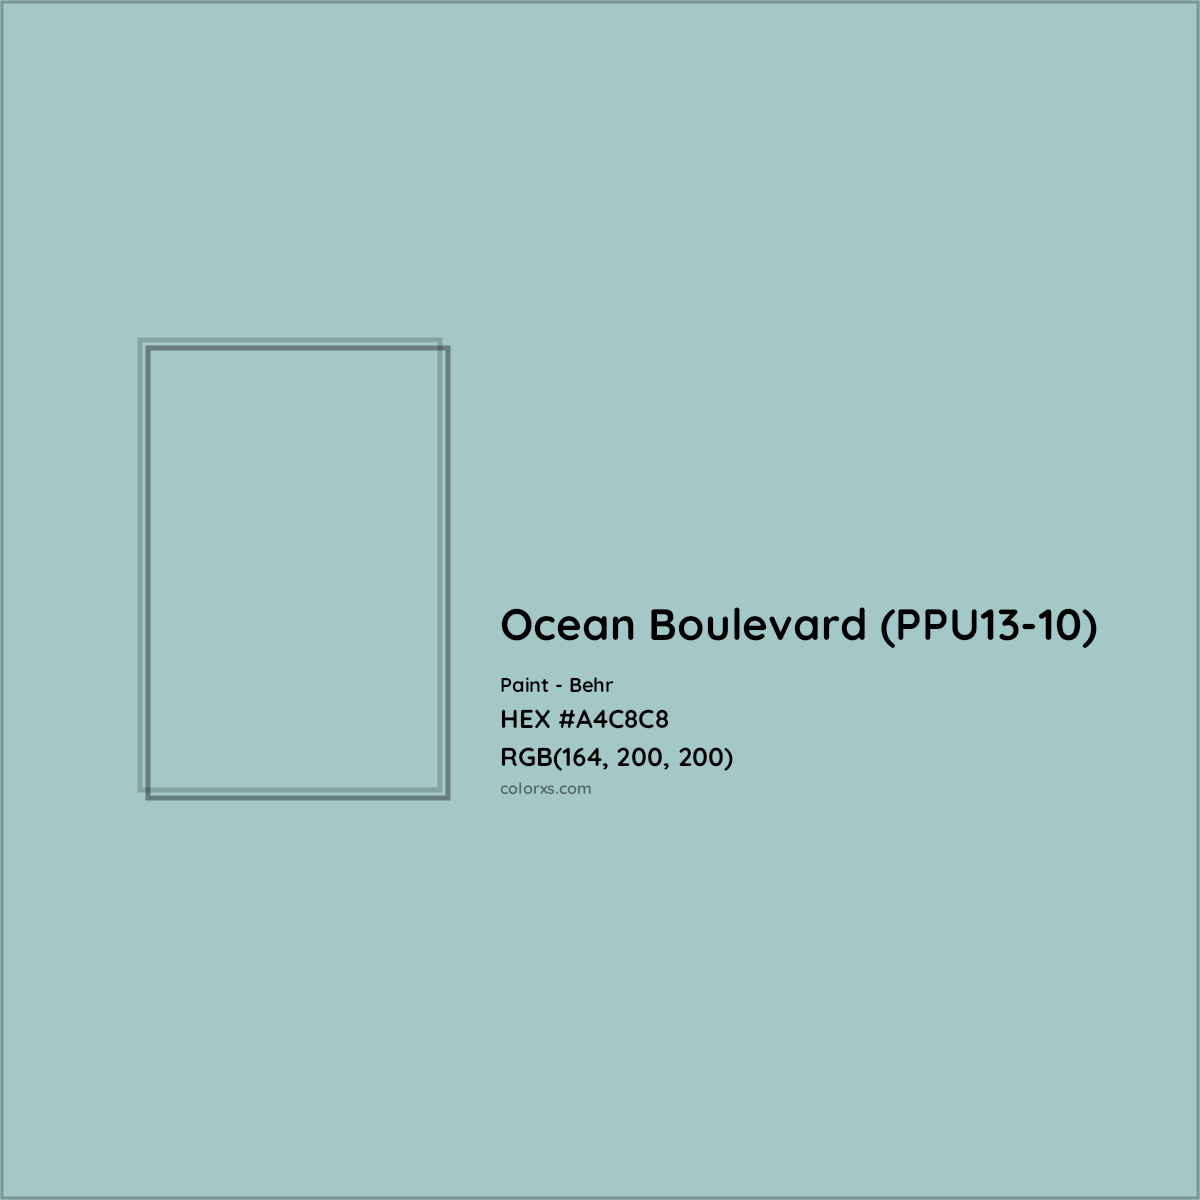 HEX #A4C8C8 Ocean Boulevard (PPU13-10) Paint Behr - Color Code